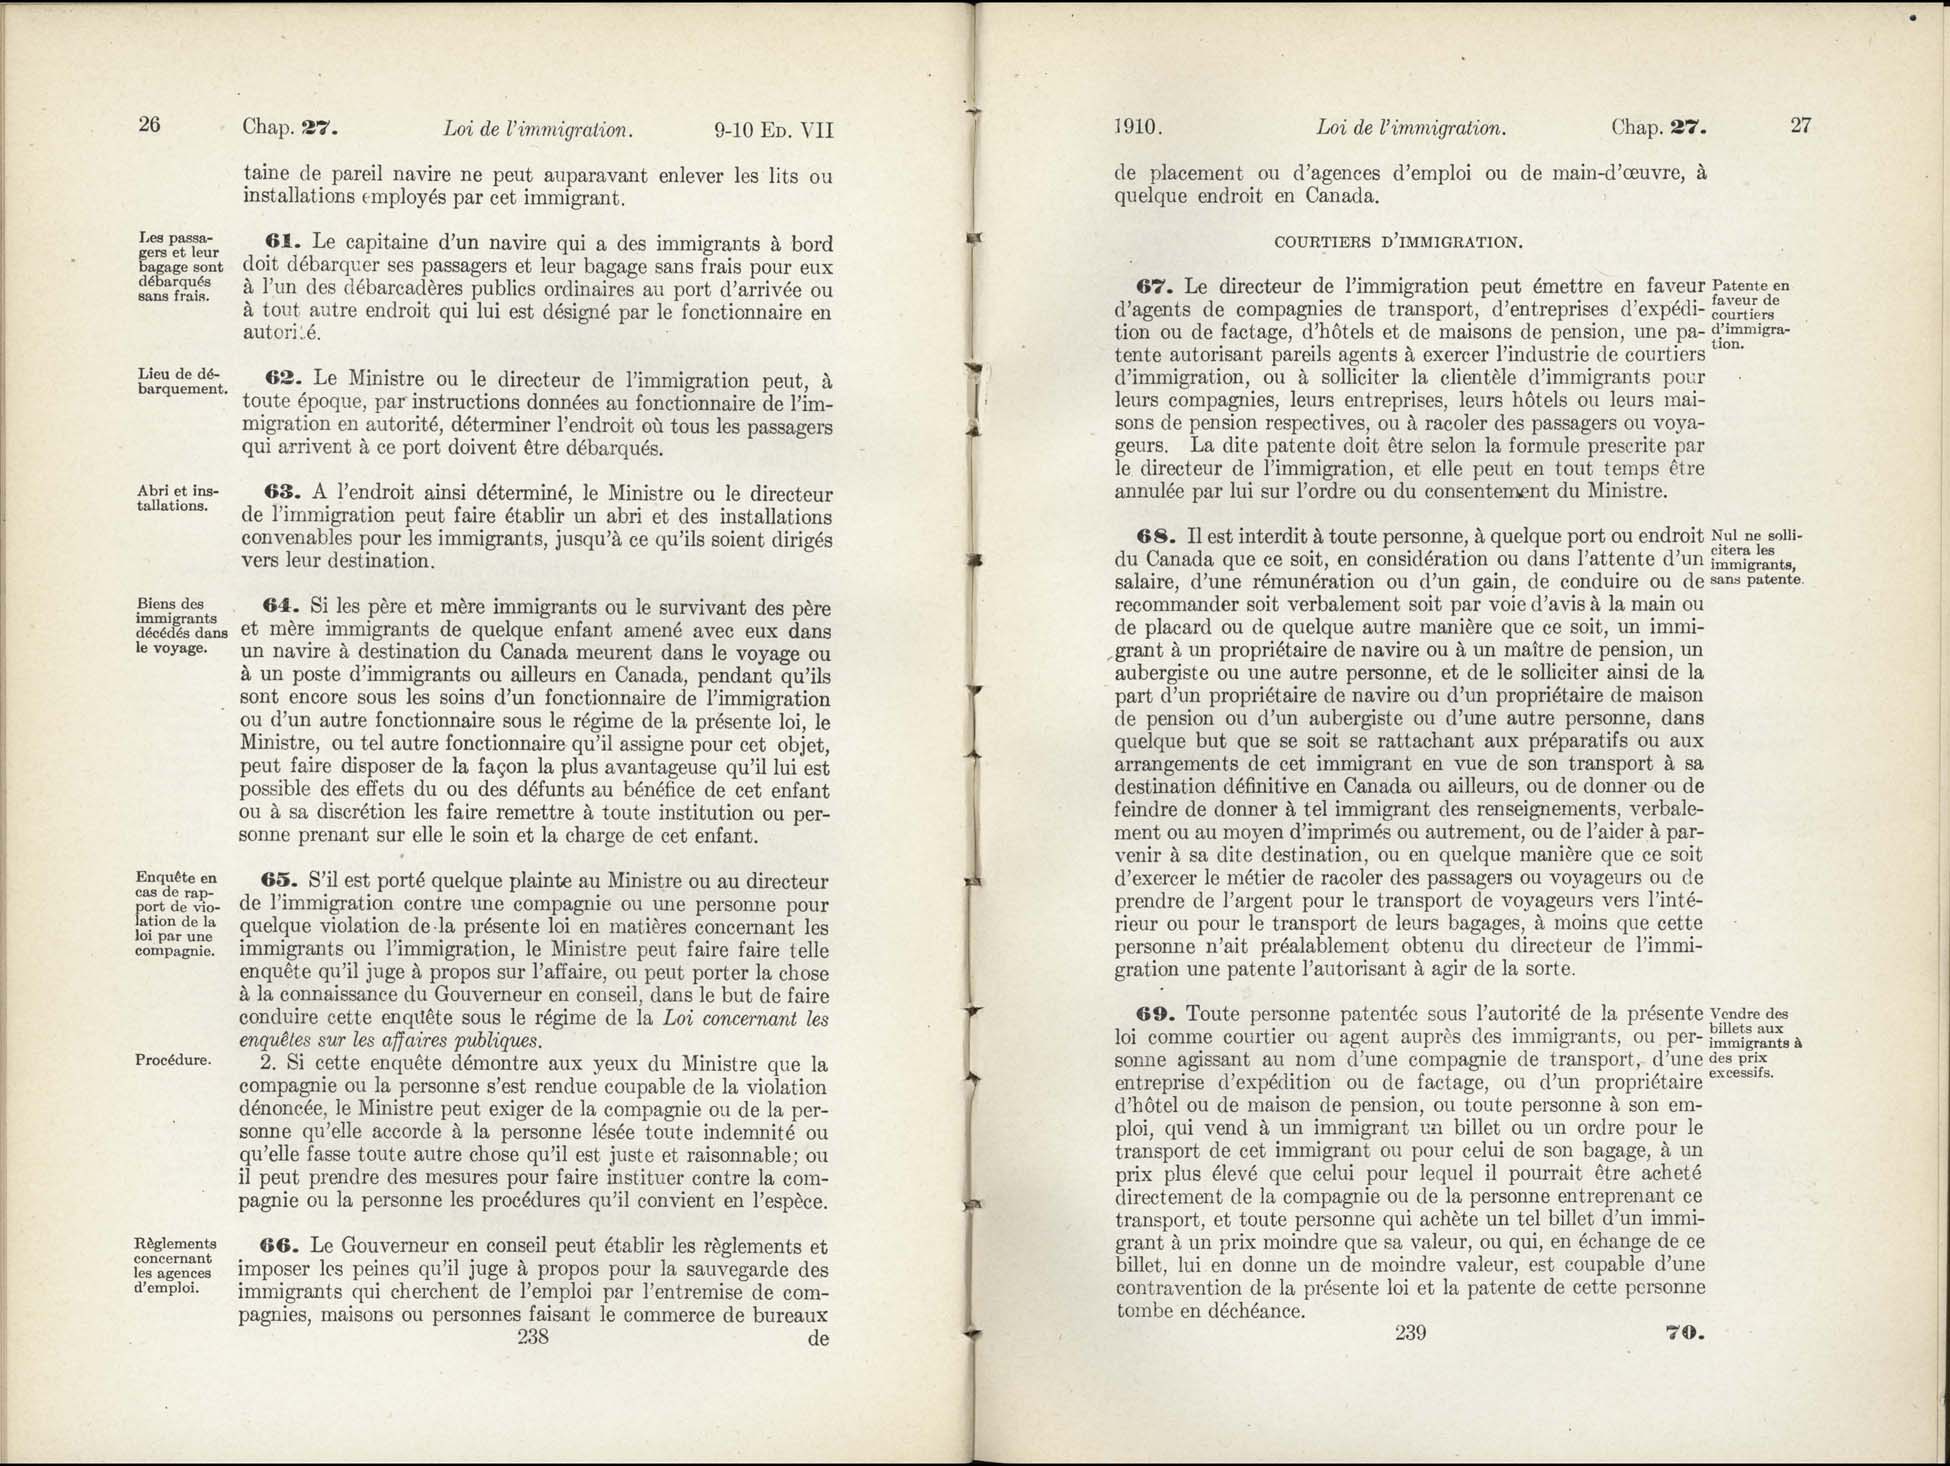 Chap 27 Page 238, 239 L’Acte d’immigration, 1910